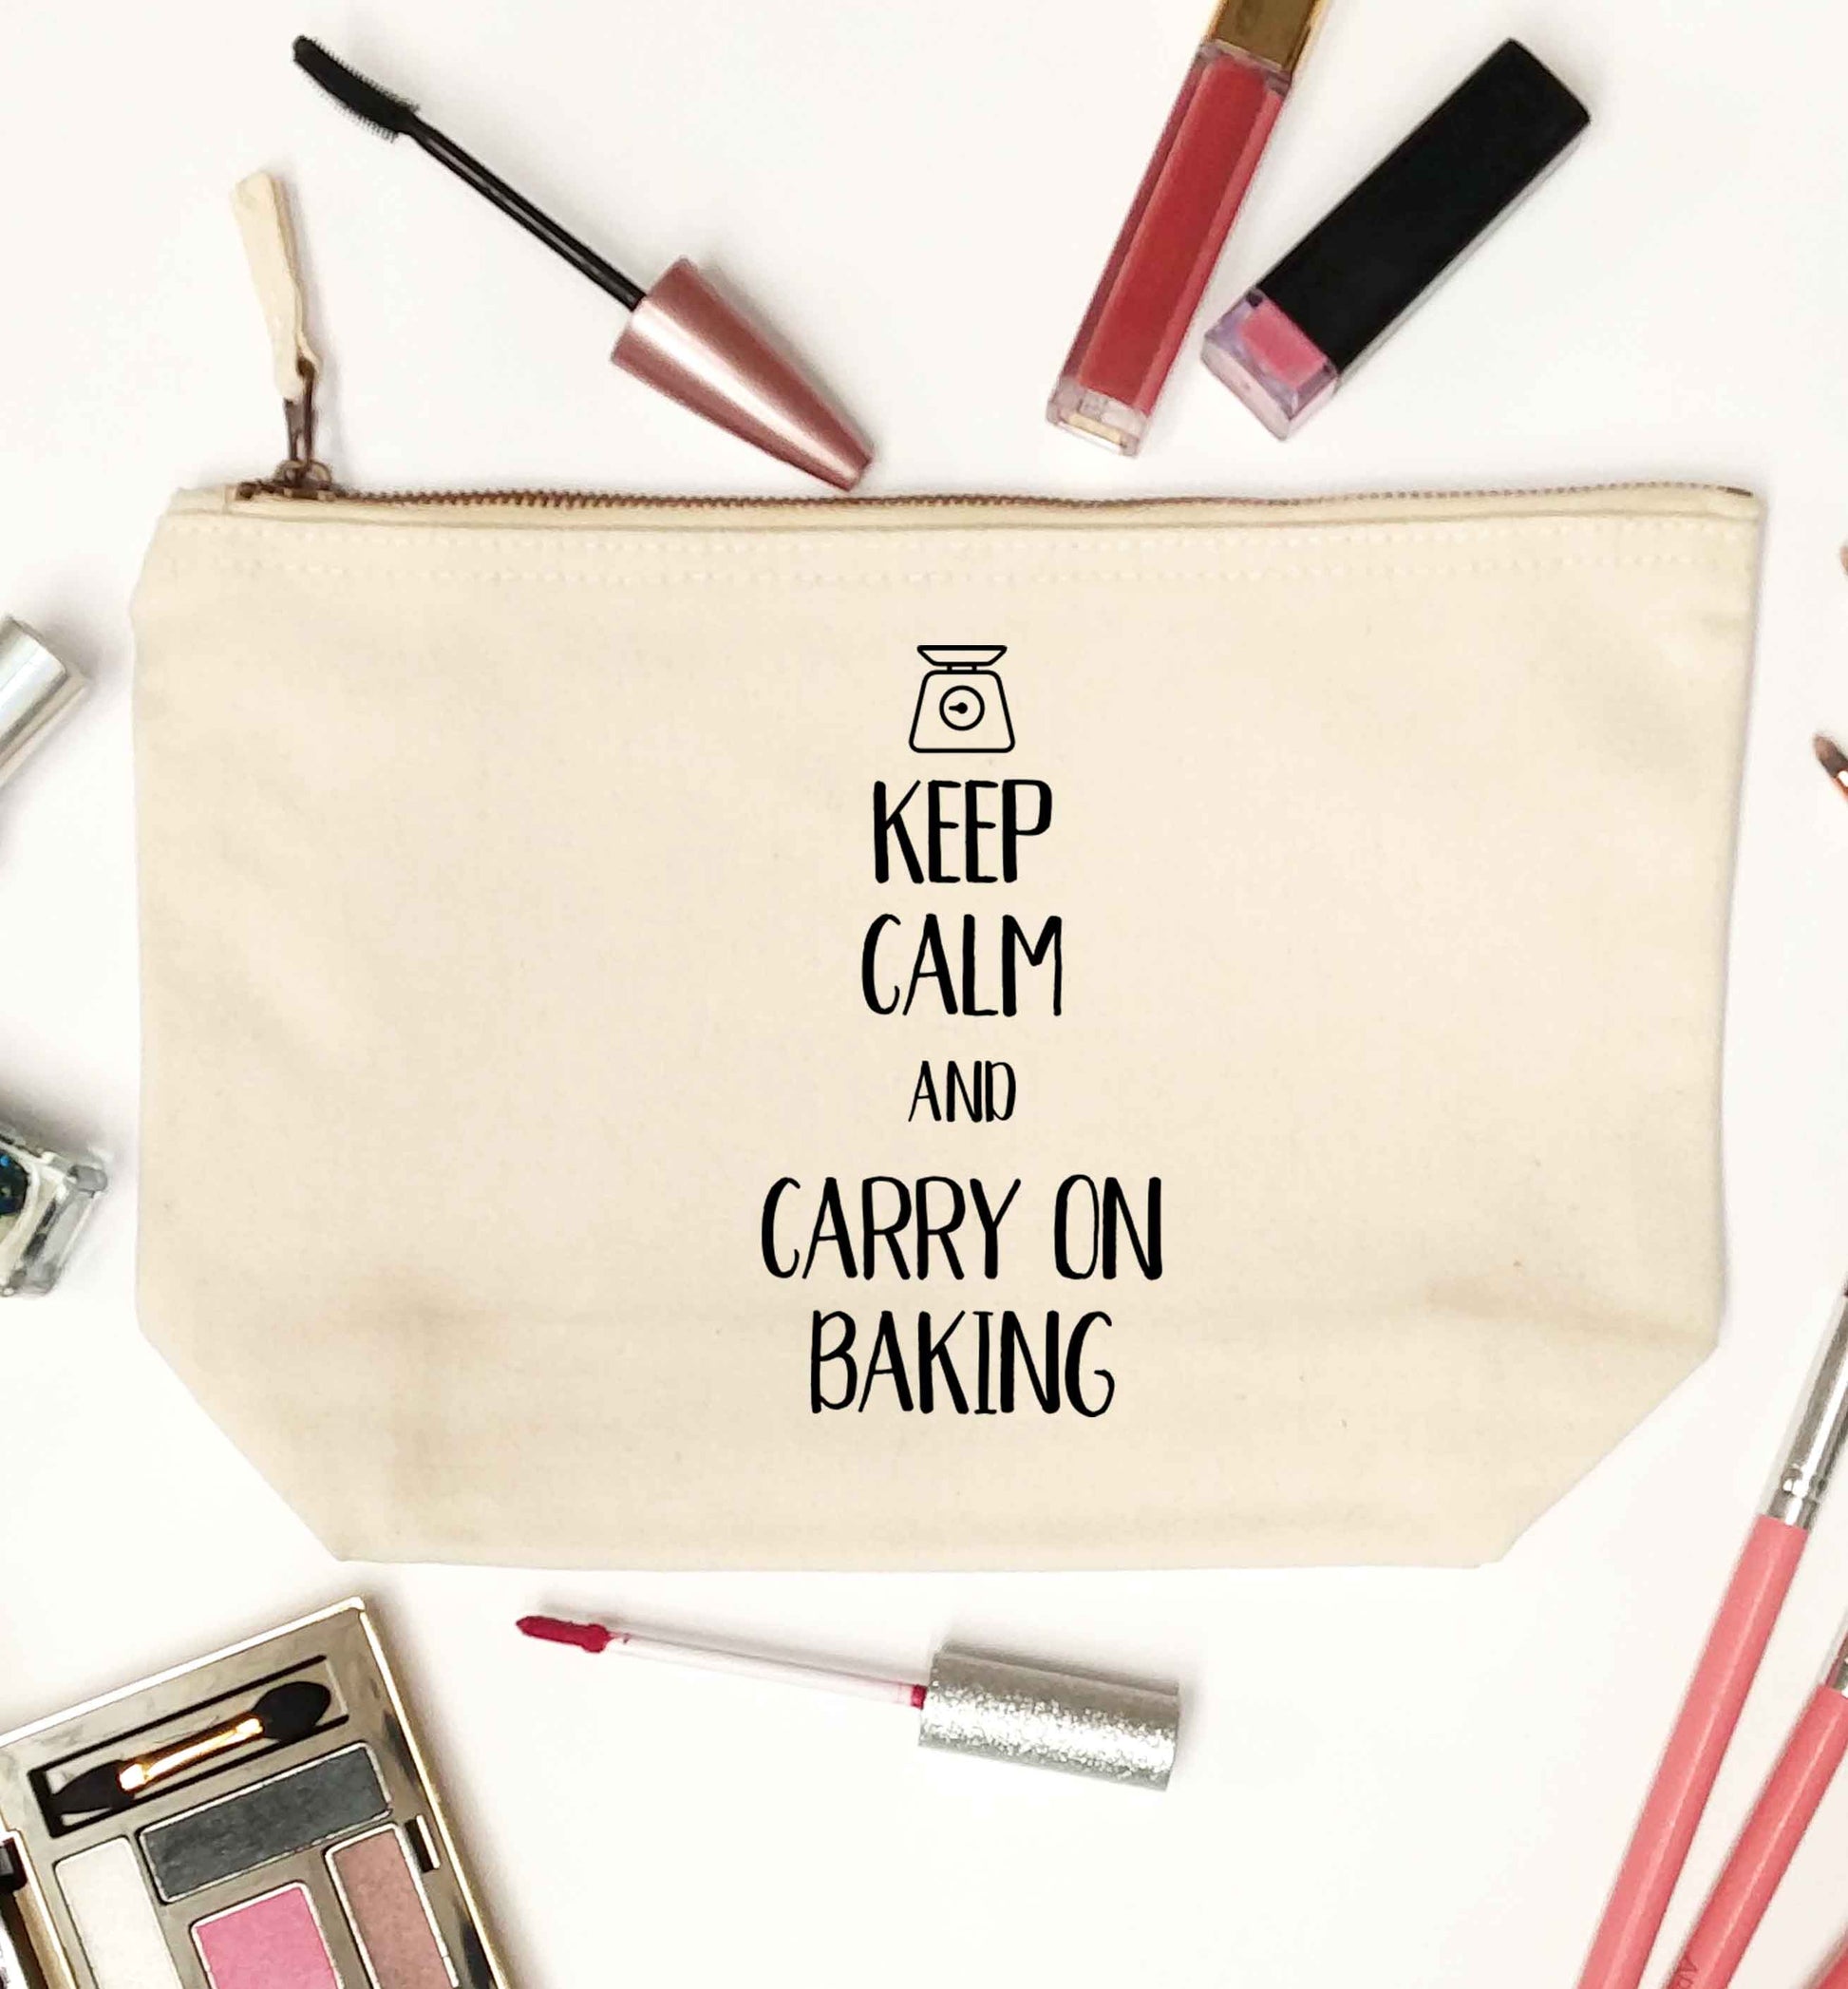 Keep calm and carry on baking natural makeup bag